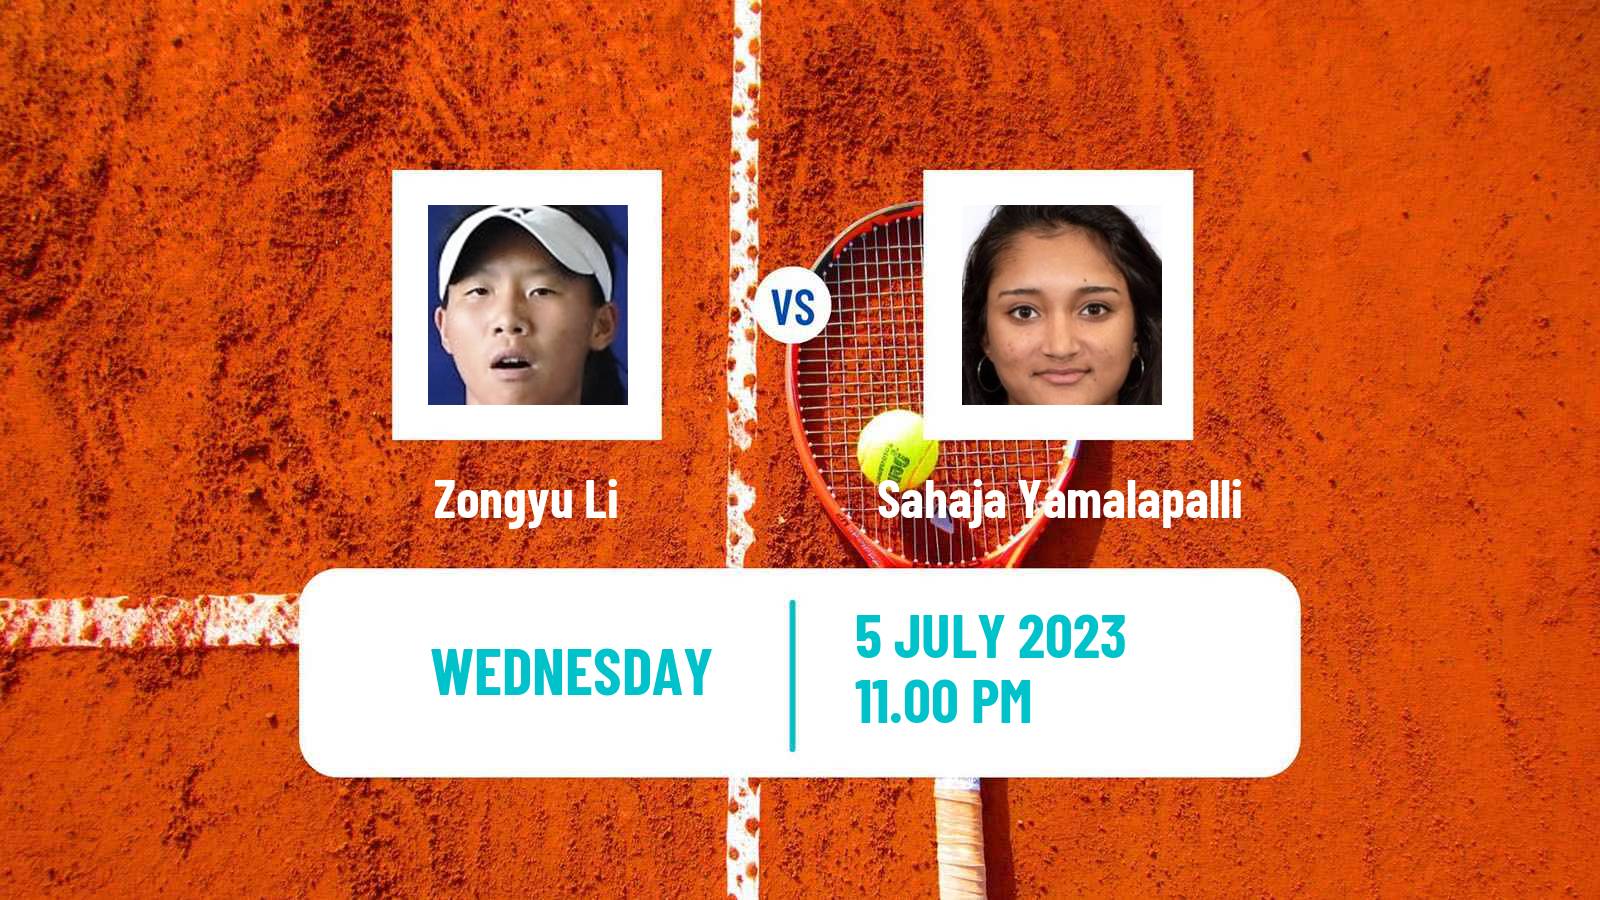 Tennis ITF W25 Nakhon Si Thammarat 2 Women Zongyu Li - Sahaja Yamalapalli